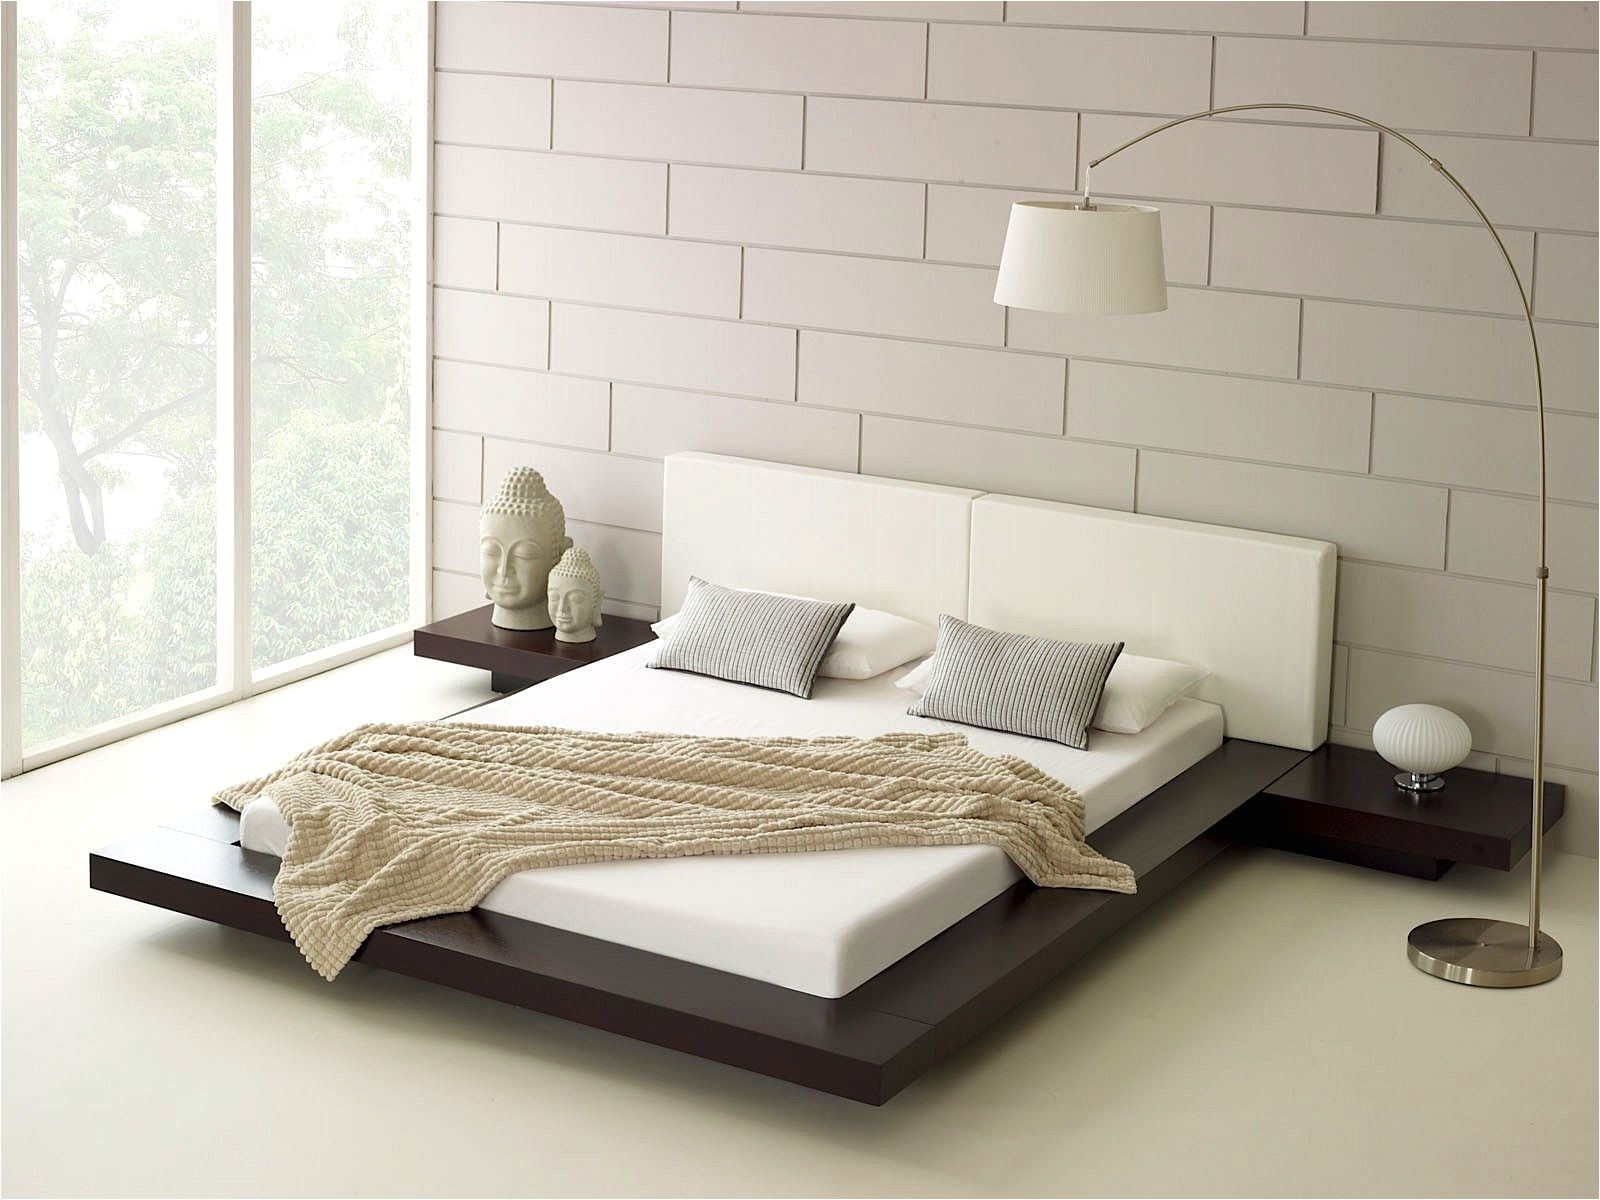 zen style minimalist bedroom with platform bed